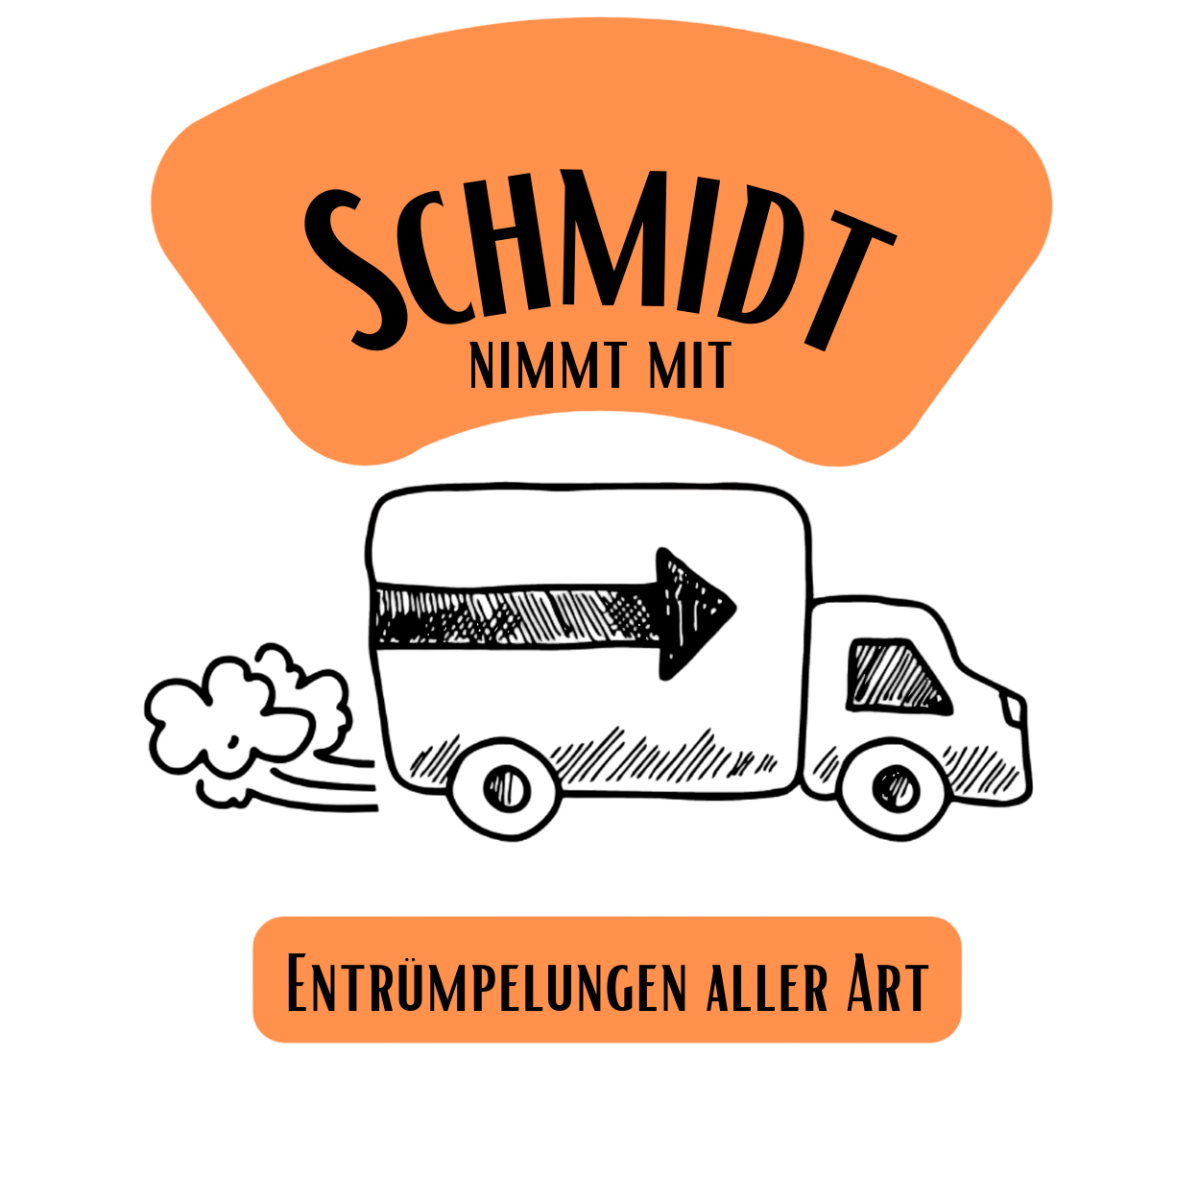 (c) Schmidt-nimmt-mit.de